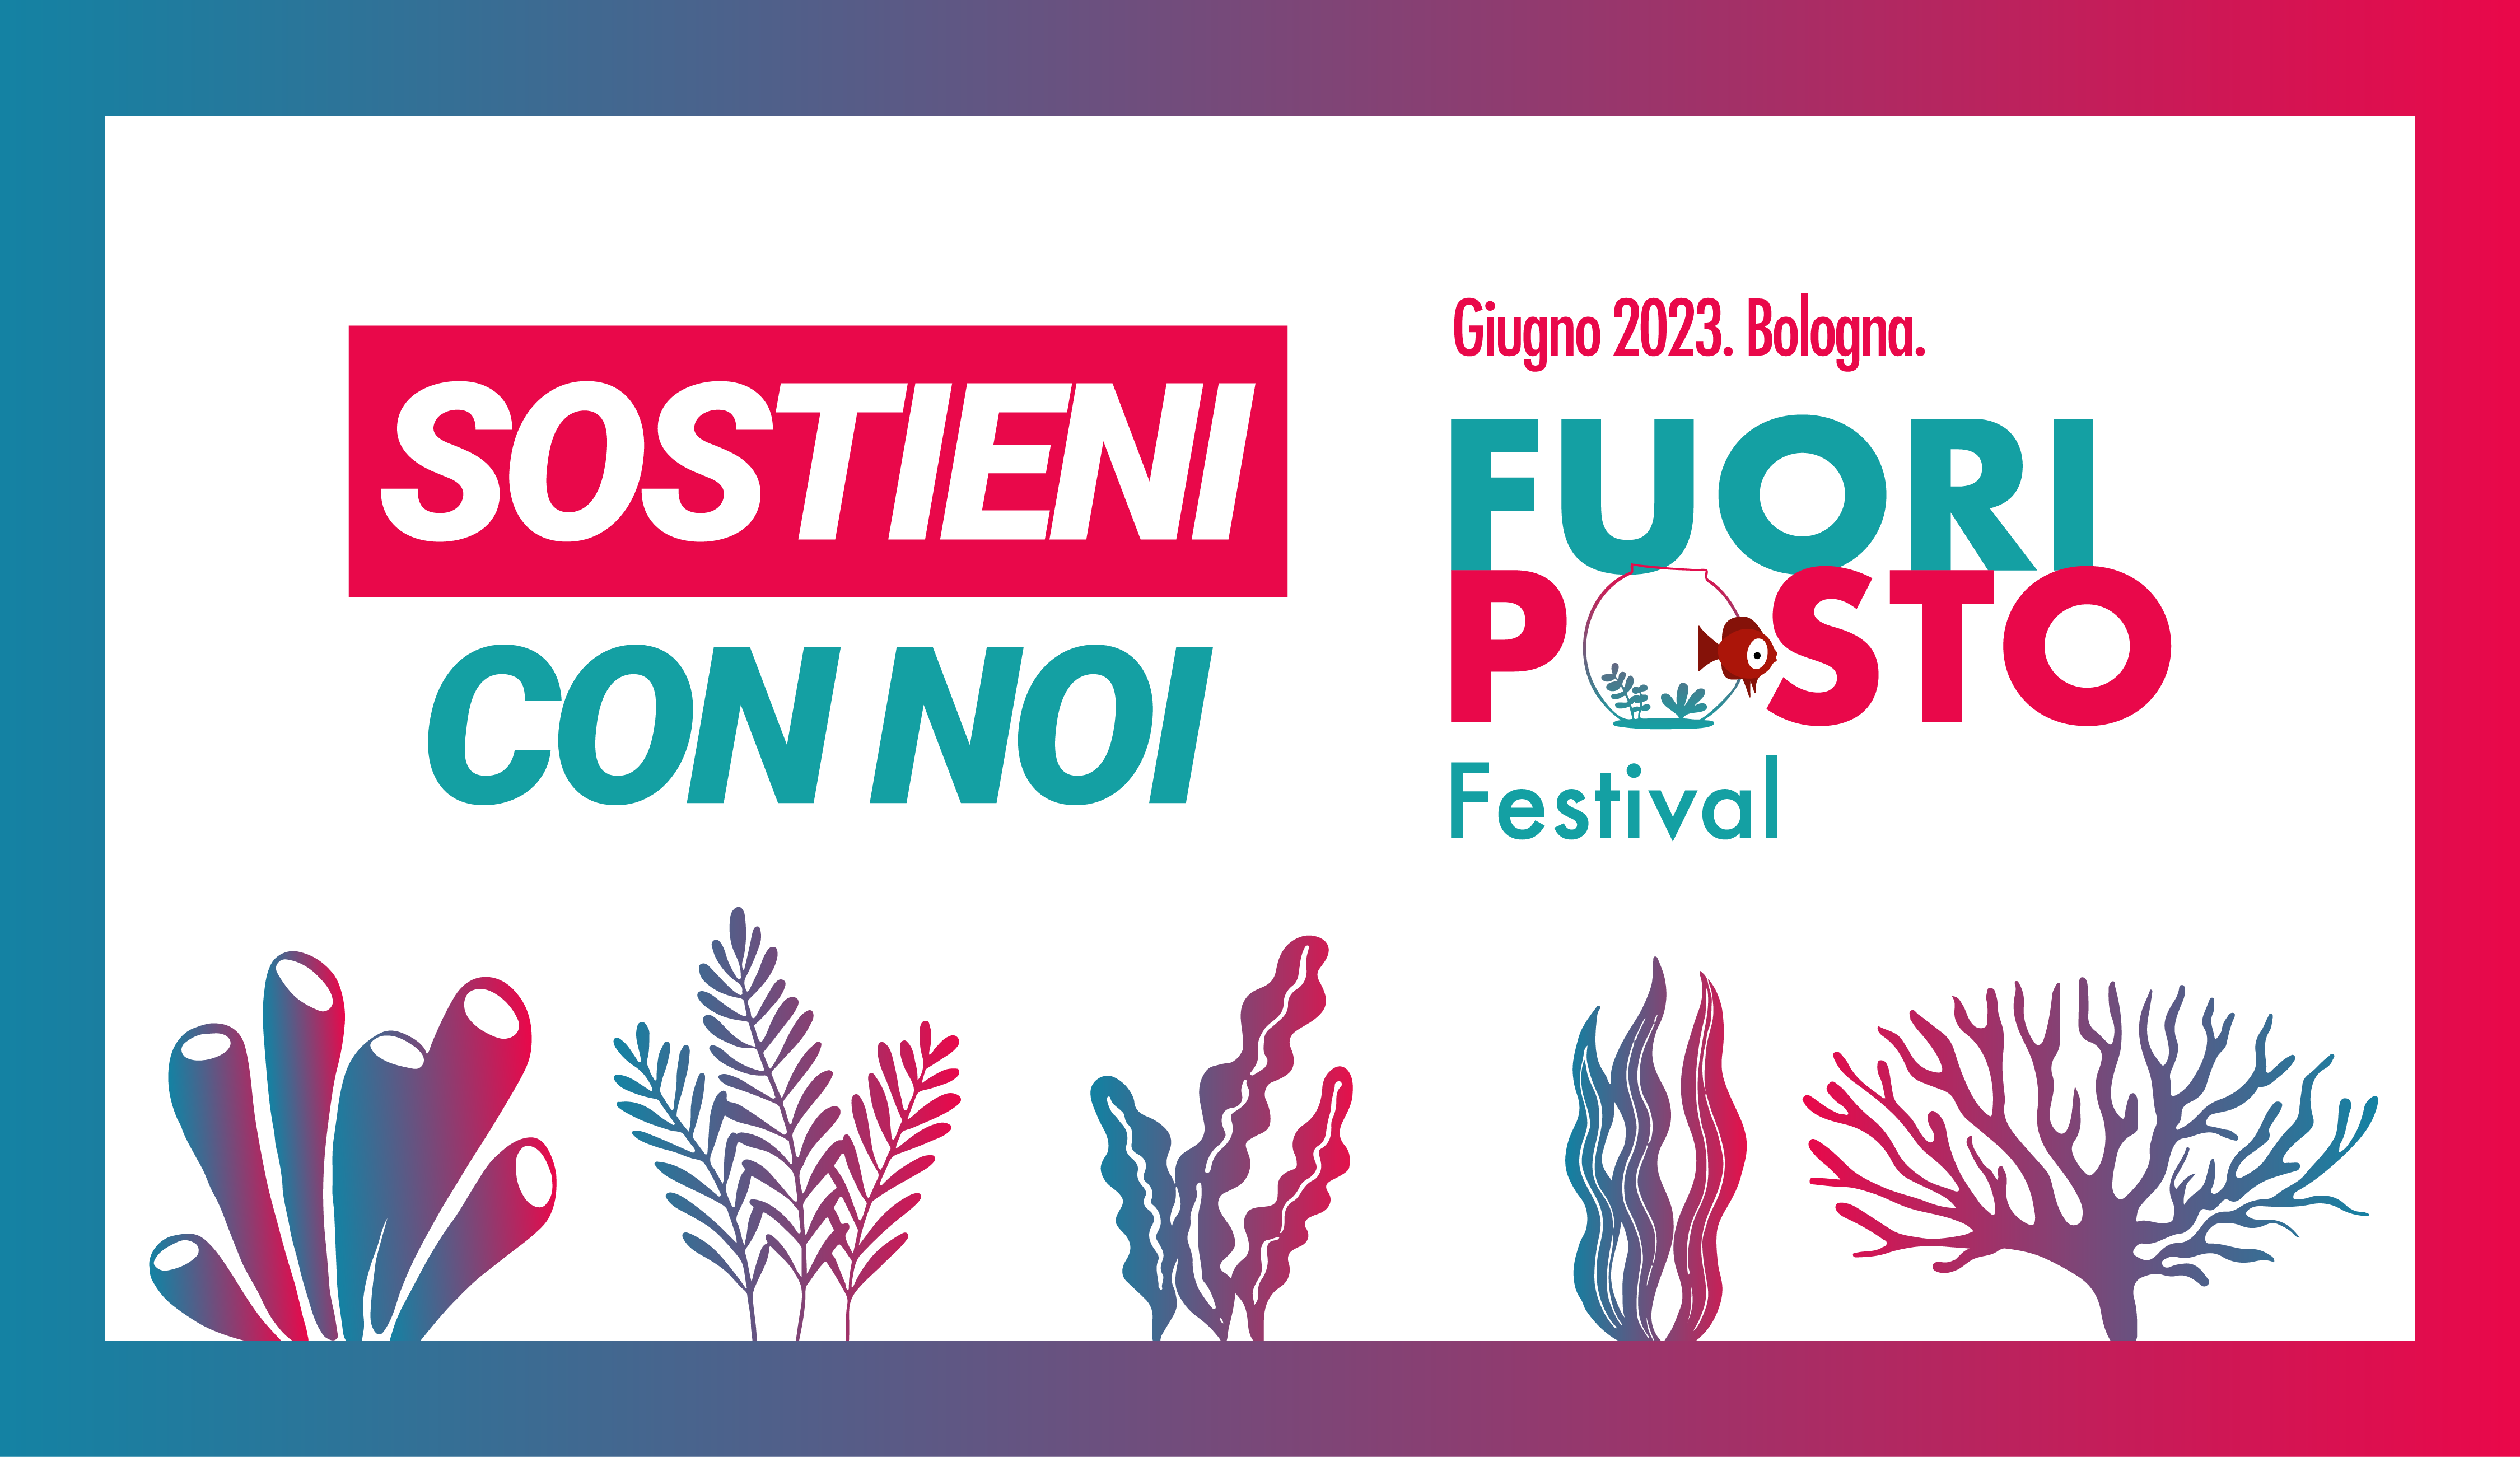 Sostieni il Festival Fuori Posto. Bologna. Giugno 2023.